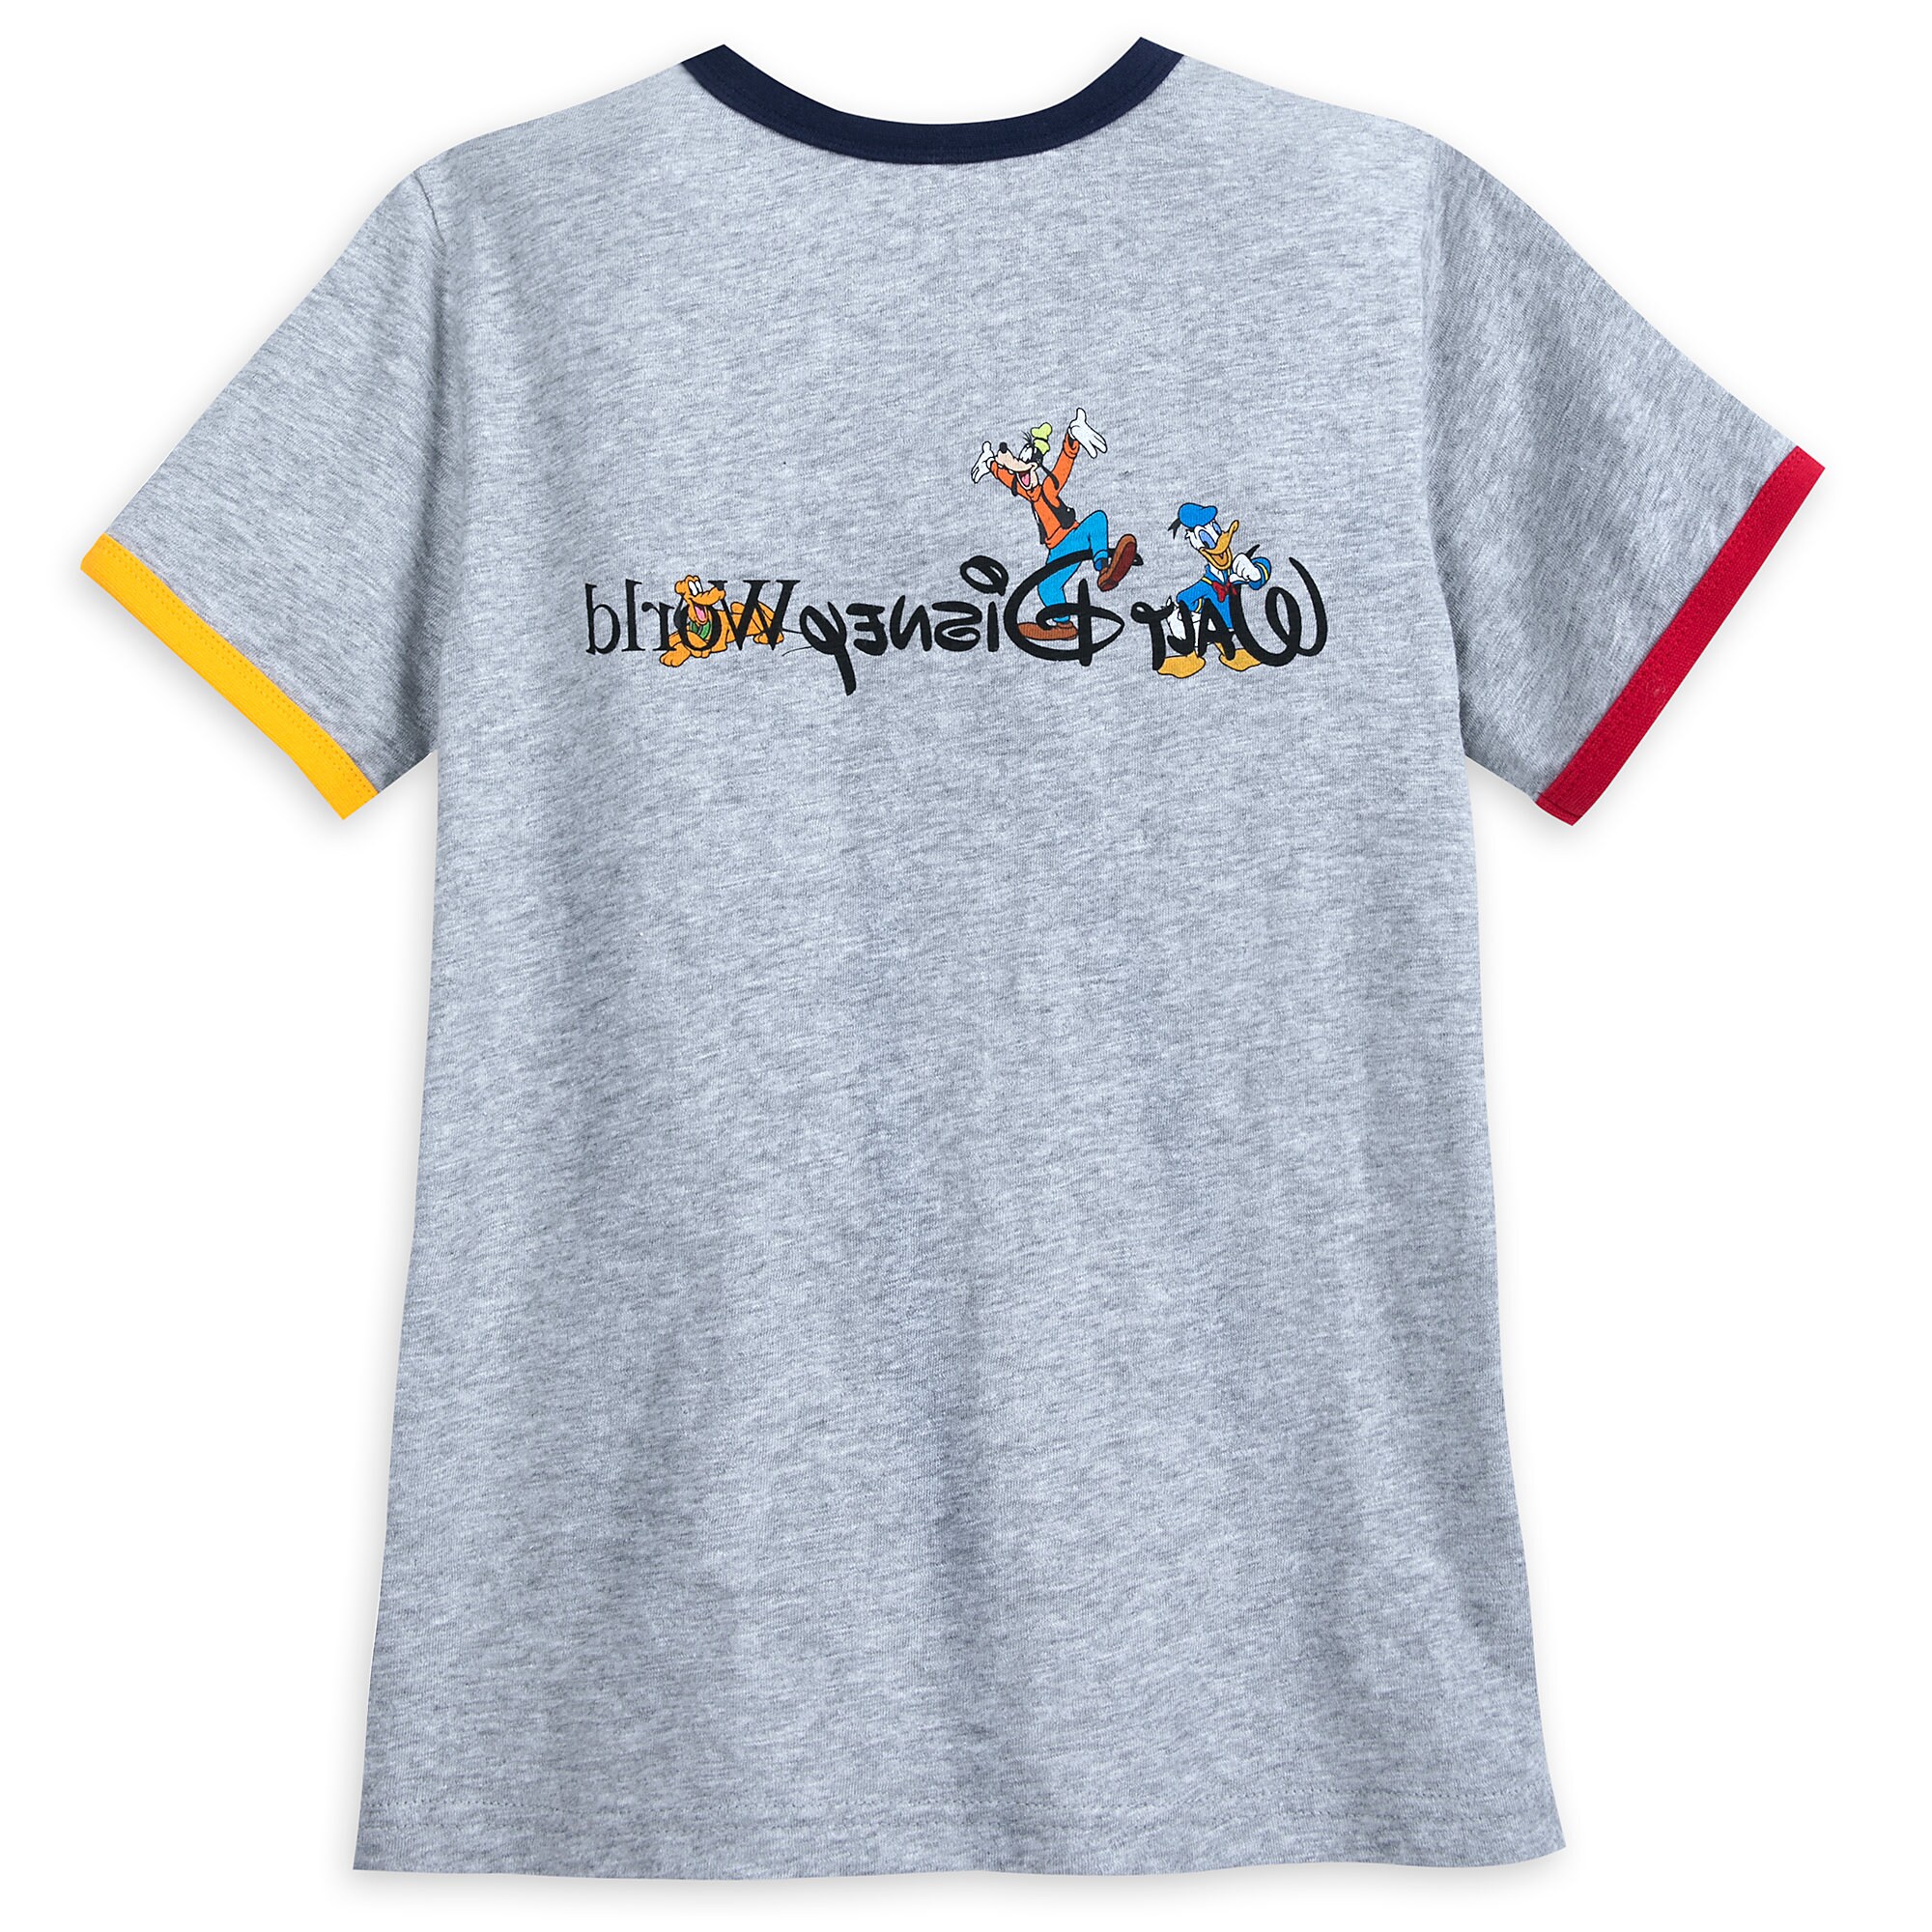 Mickey Mouse Ringer T-Shirt for Boys - Walt Disney World